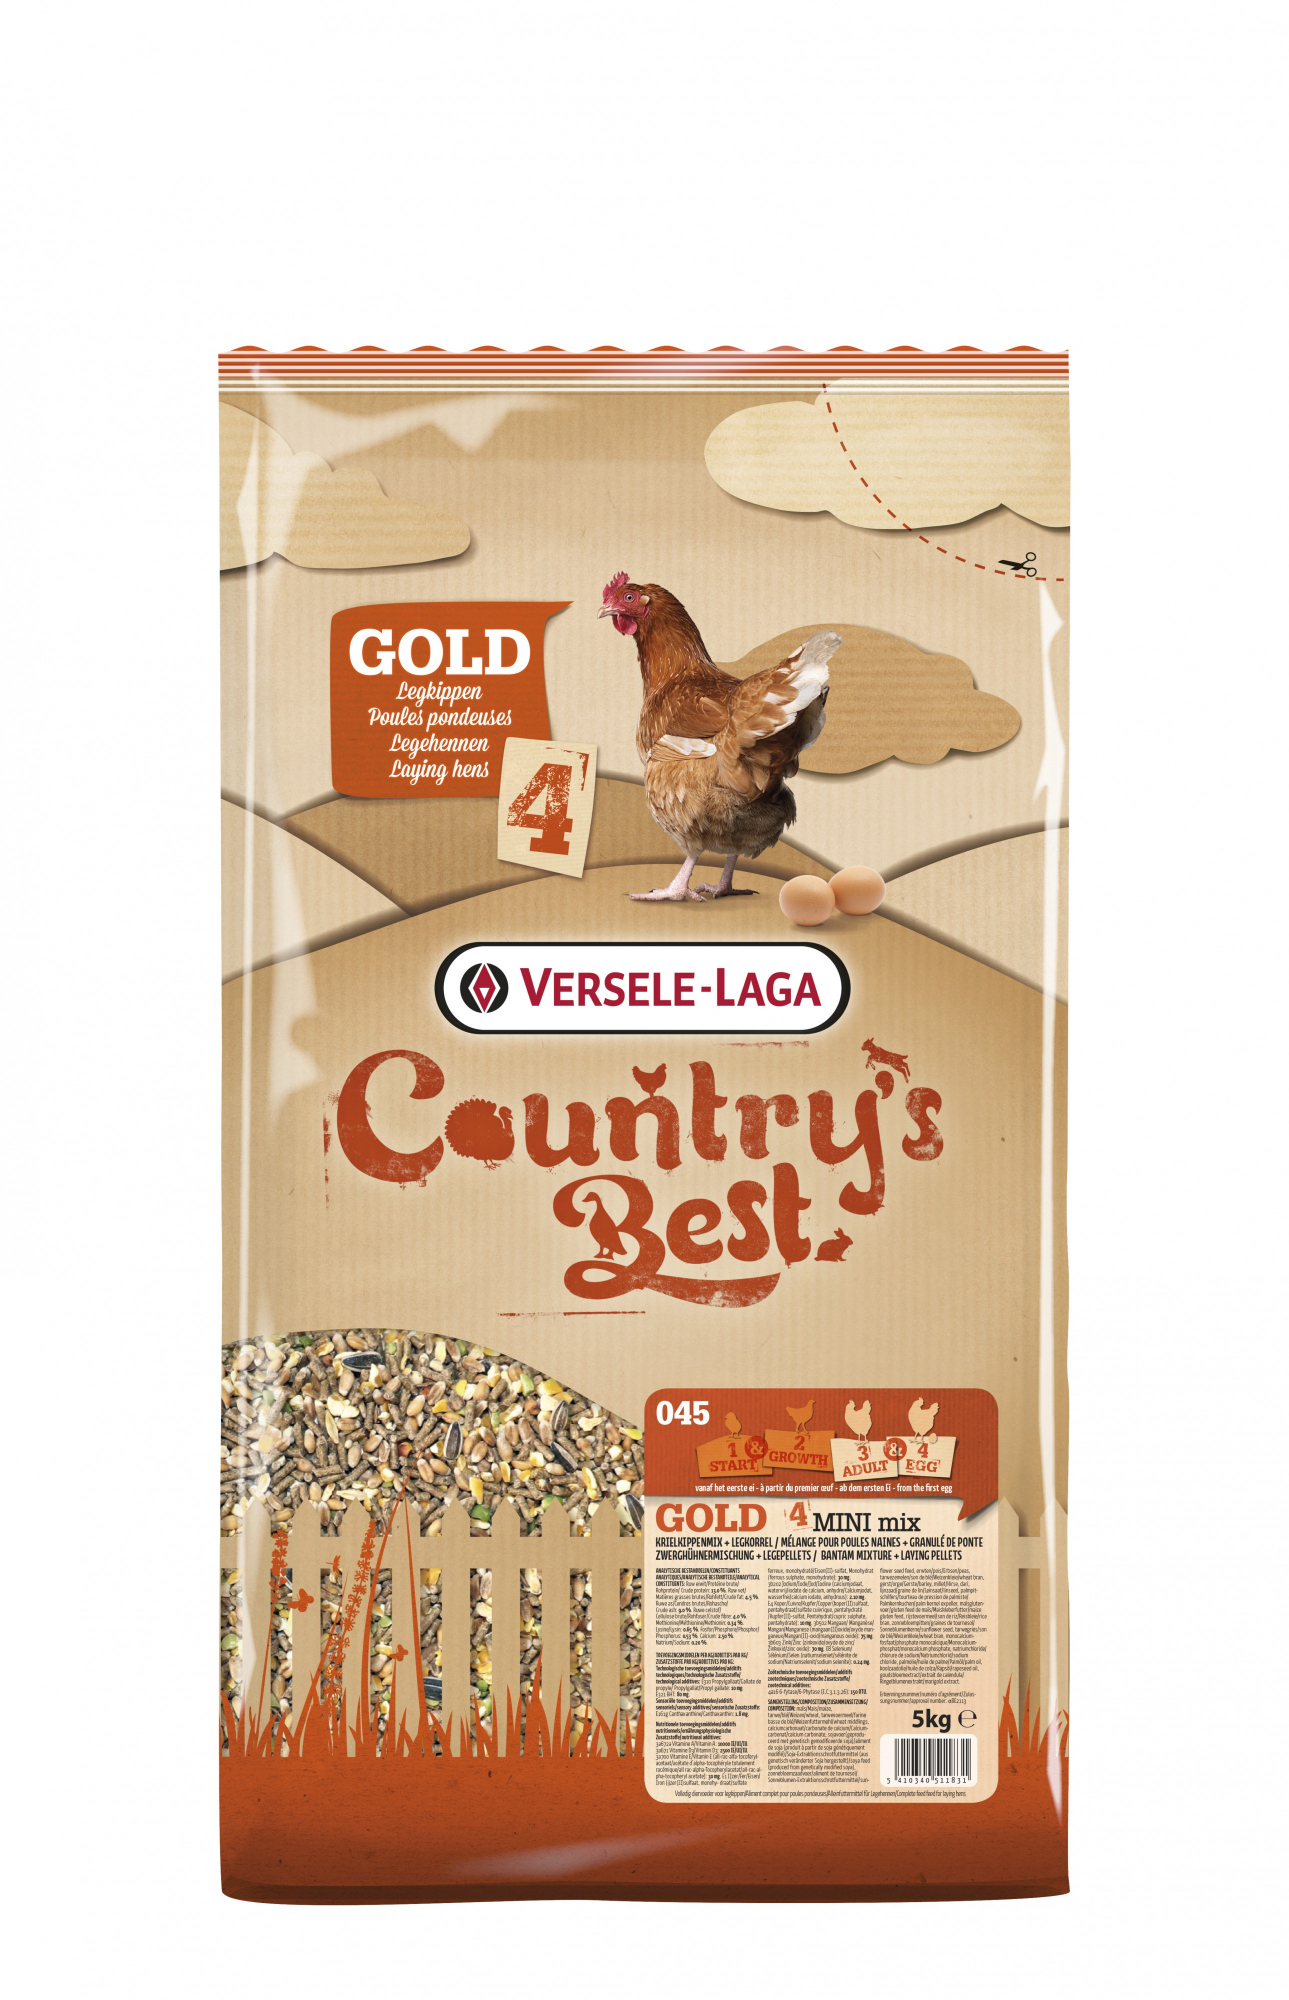 Country's Best Gold 4 - Mistura para galinhas anãs